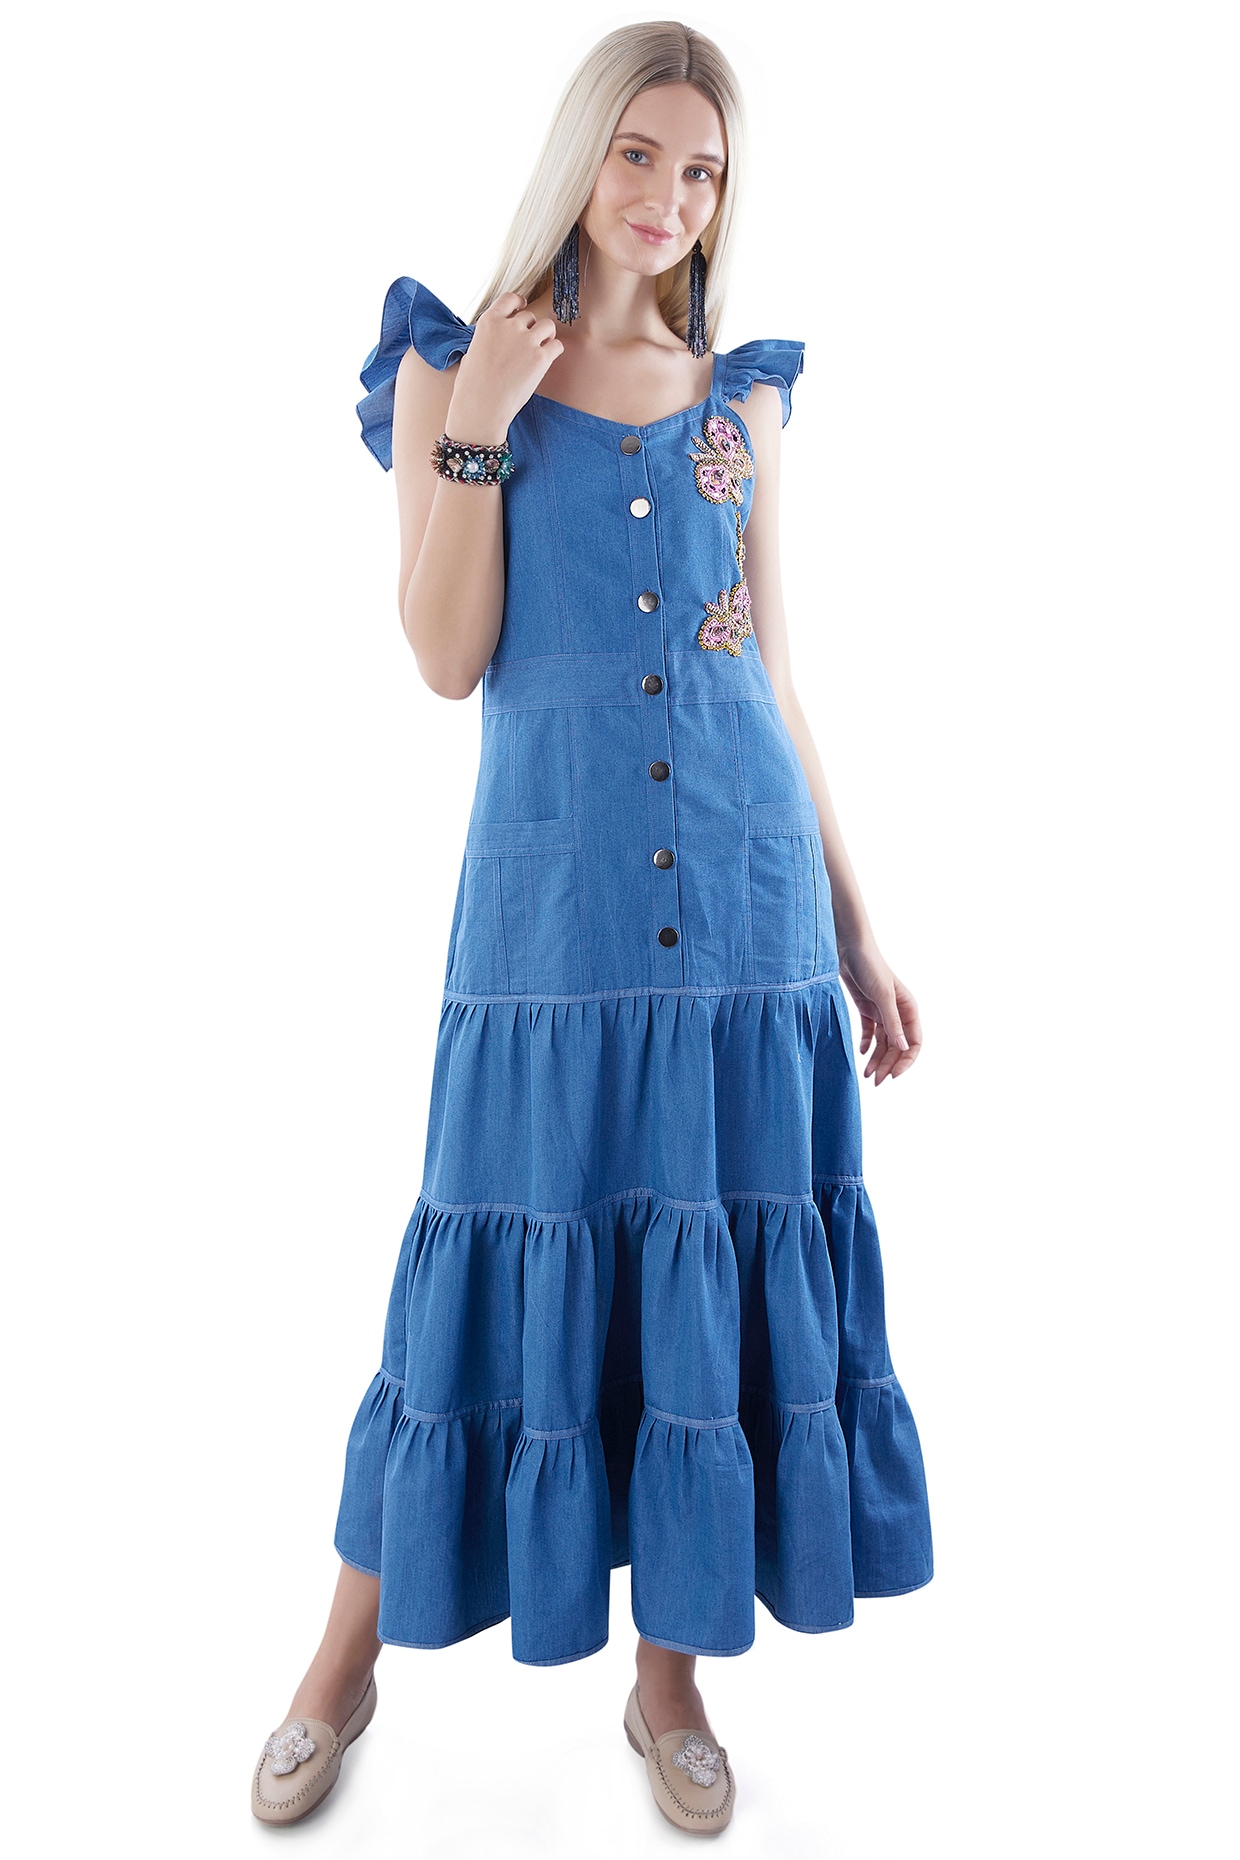 Buy Nuon Blue Denim Dress from Westside